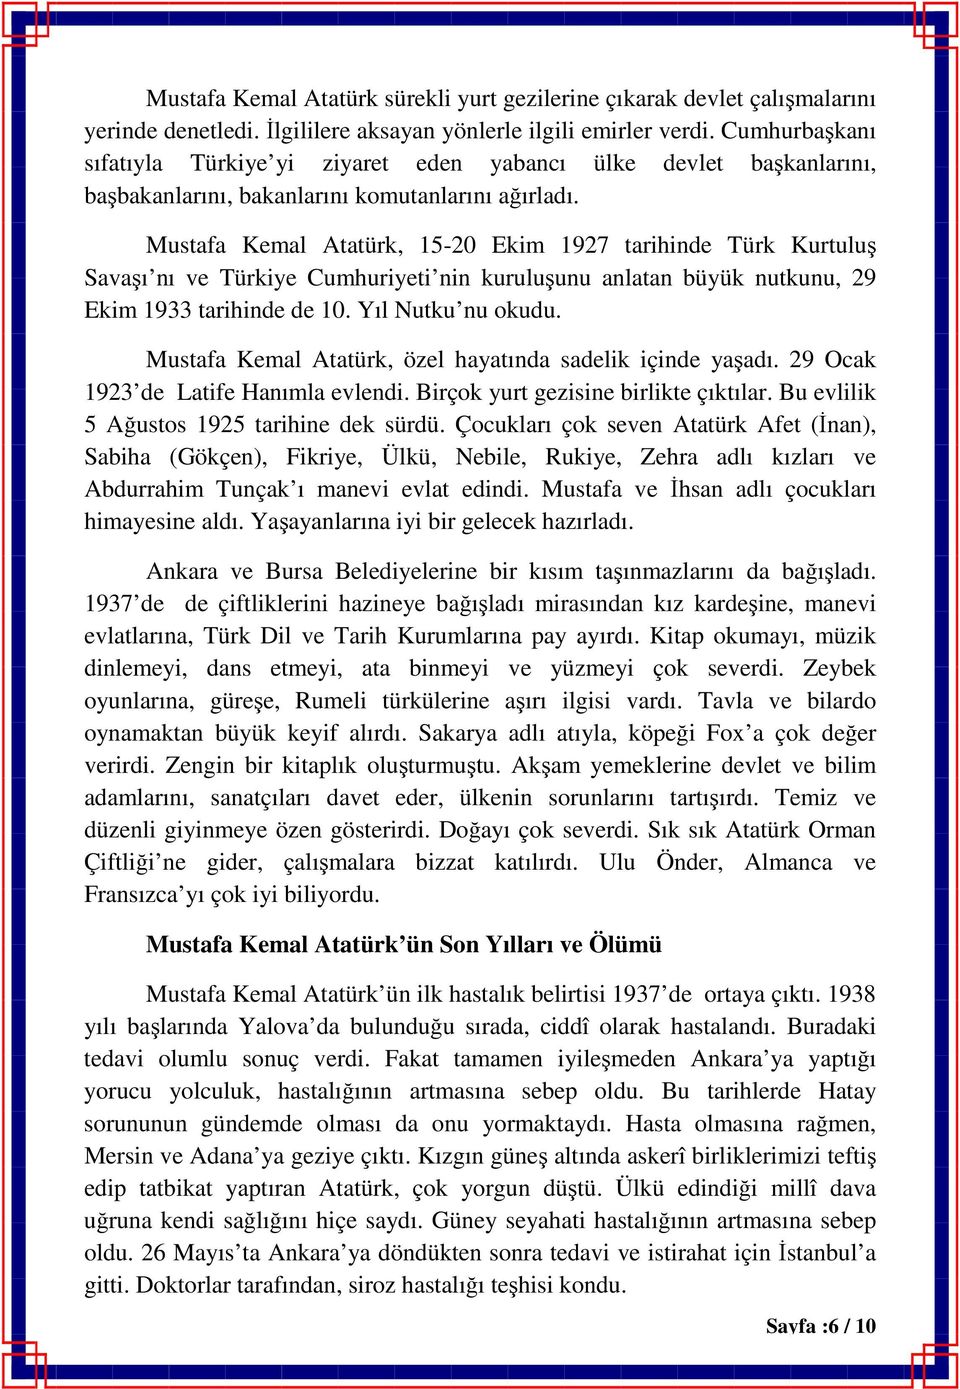 Mustafa Kemal Atatürk, 15-20 Ekim 1927 tarihinde Türk Kurtuluş Savaşı nı ve Türkiye Cumhuriyeti nin kuruluşunu anlatan büyük nutkunu, 29 Ekim 1933 tarihinde de 10. Yıl Nutku nu okudu.